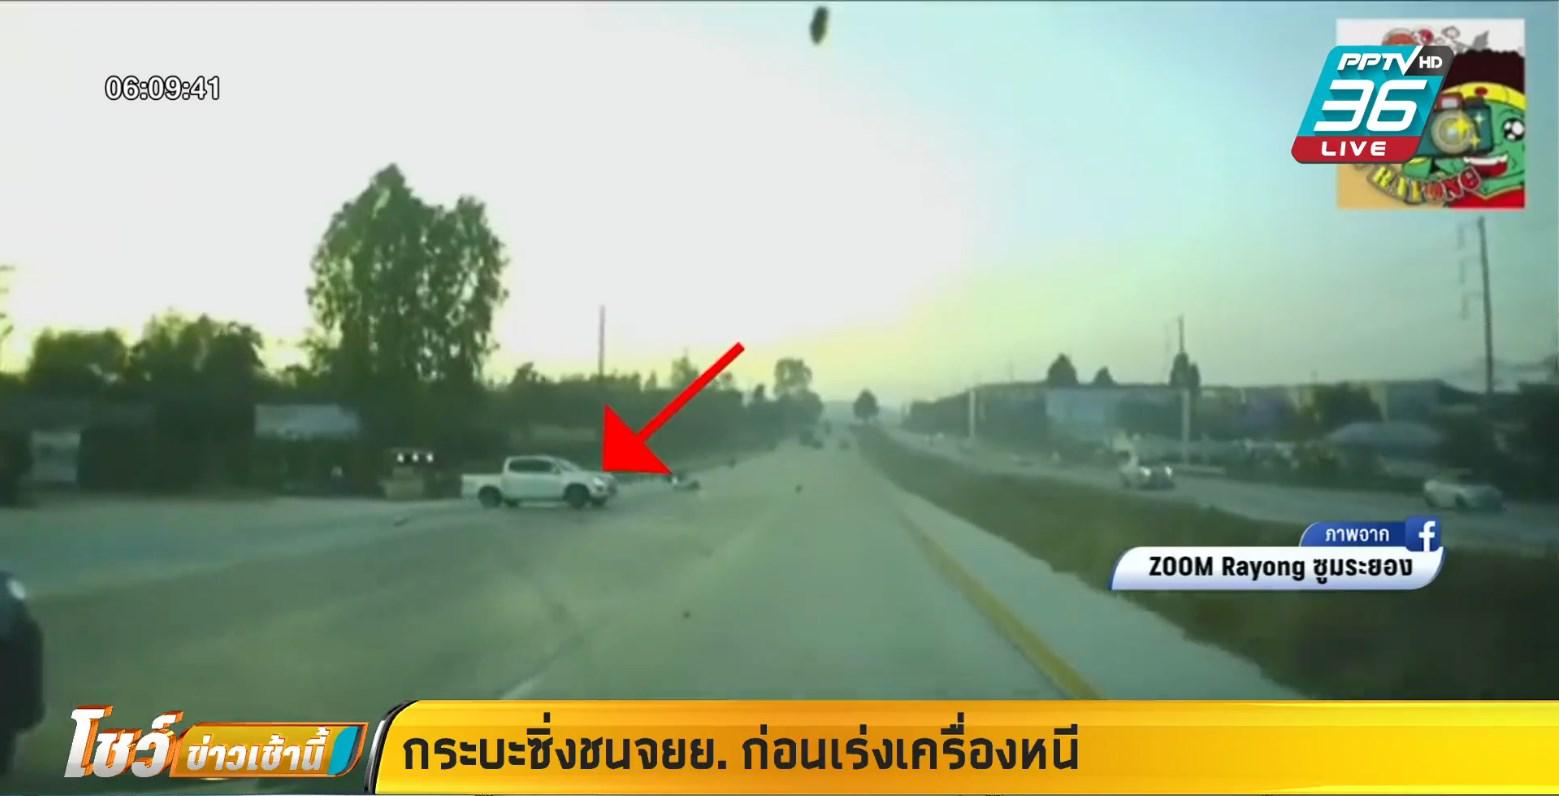 2 กระบะแต่งซิ่งแข่งกัน ชนมอไซค์คว่ำ ก่อนรถหมุนกลางถนน ซิ่งหนีต่อ